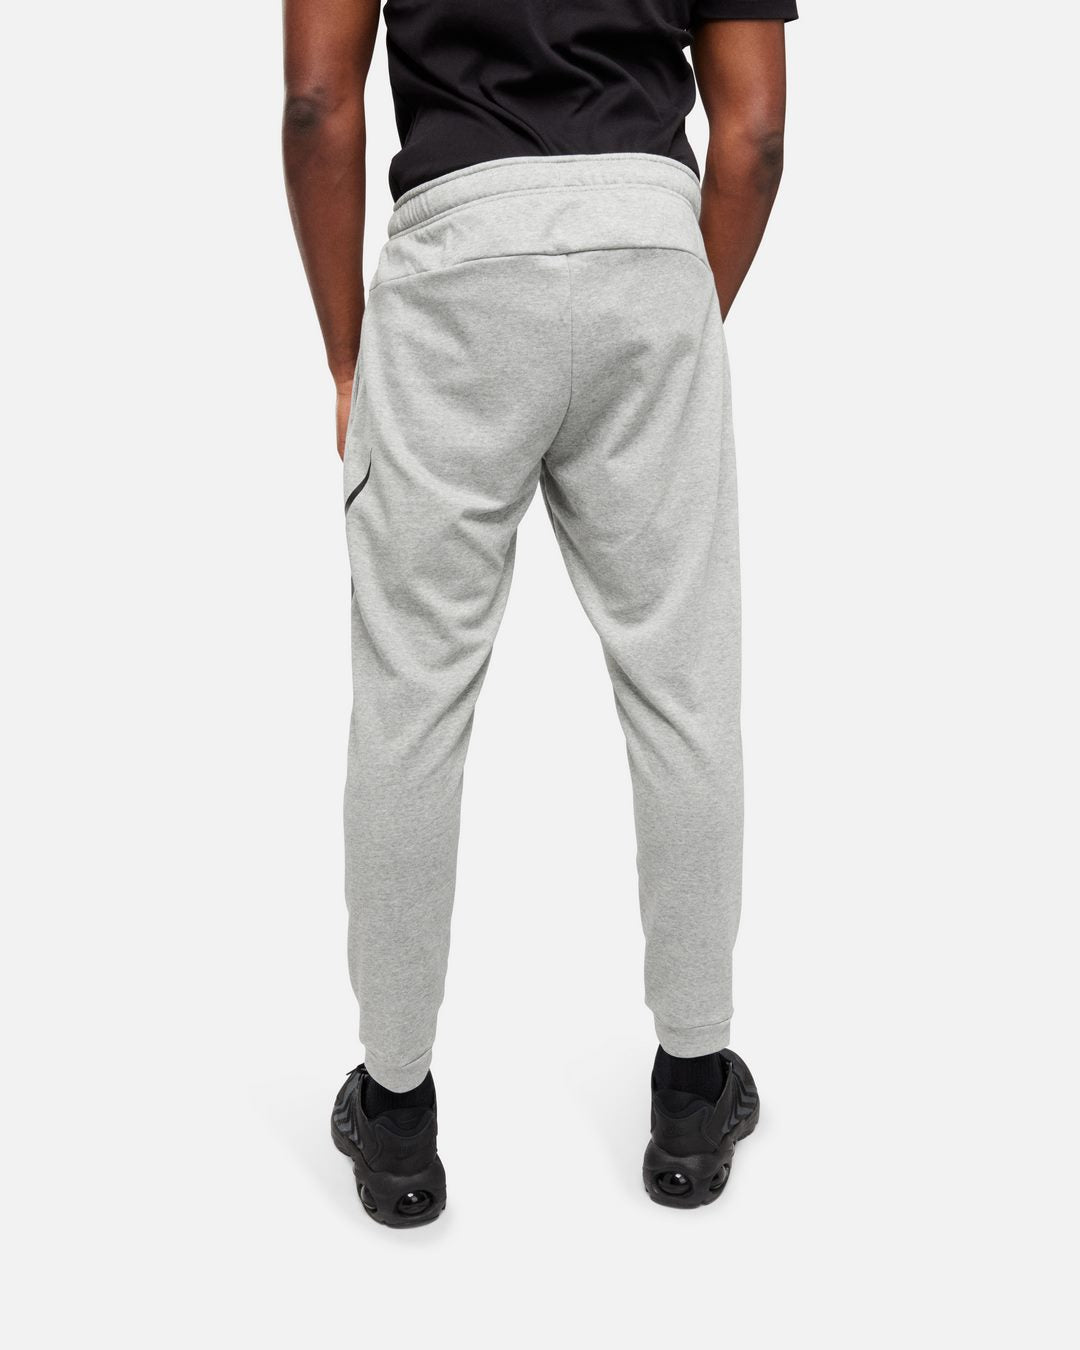 Pantaloni Nike Dry Graphic - Grigio/Nero